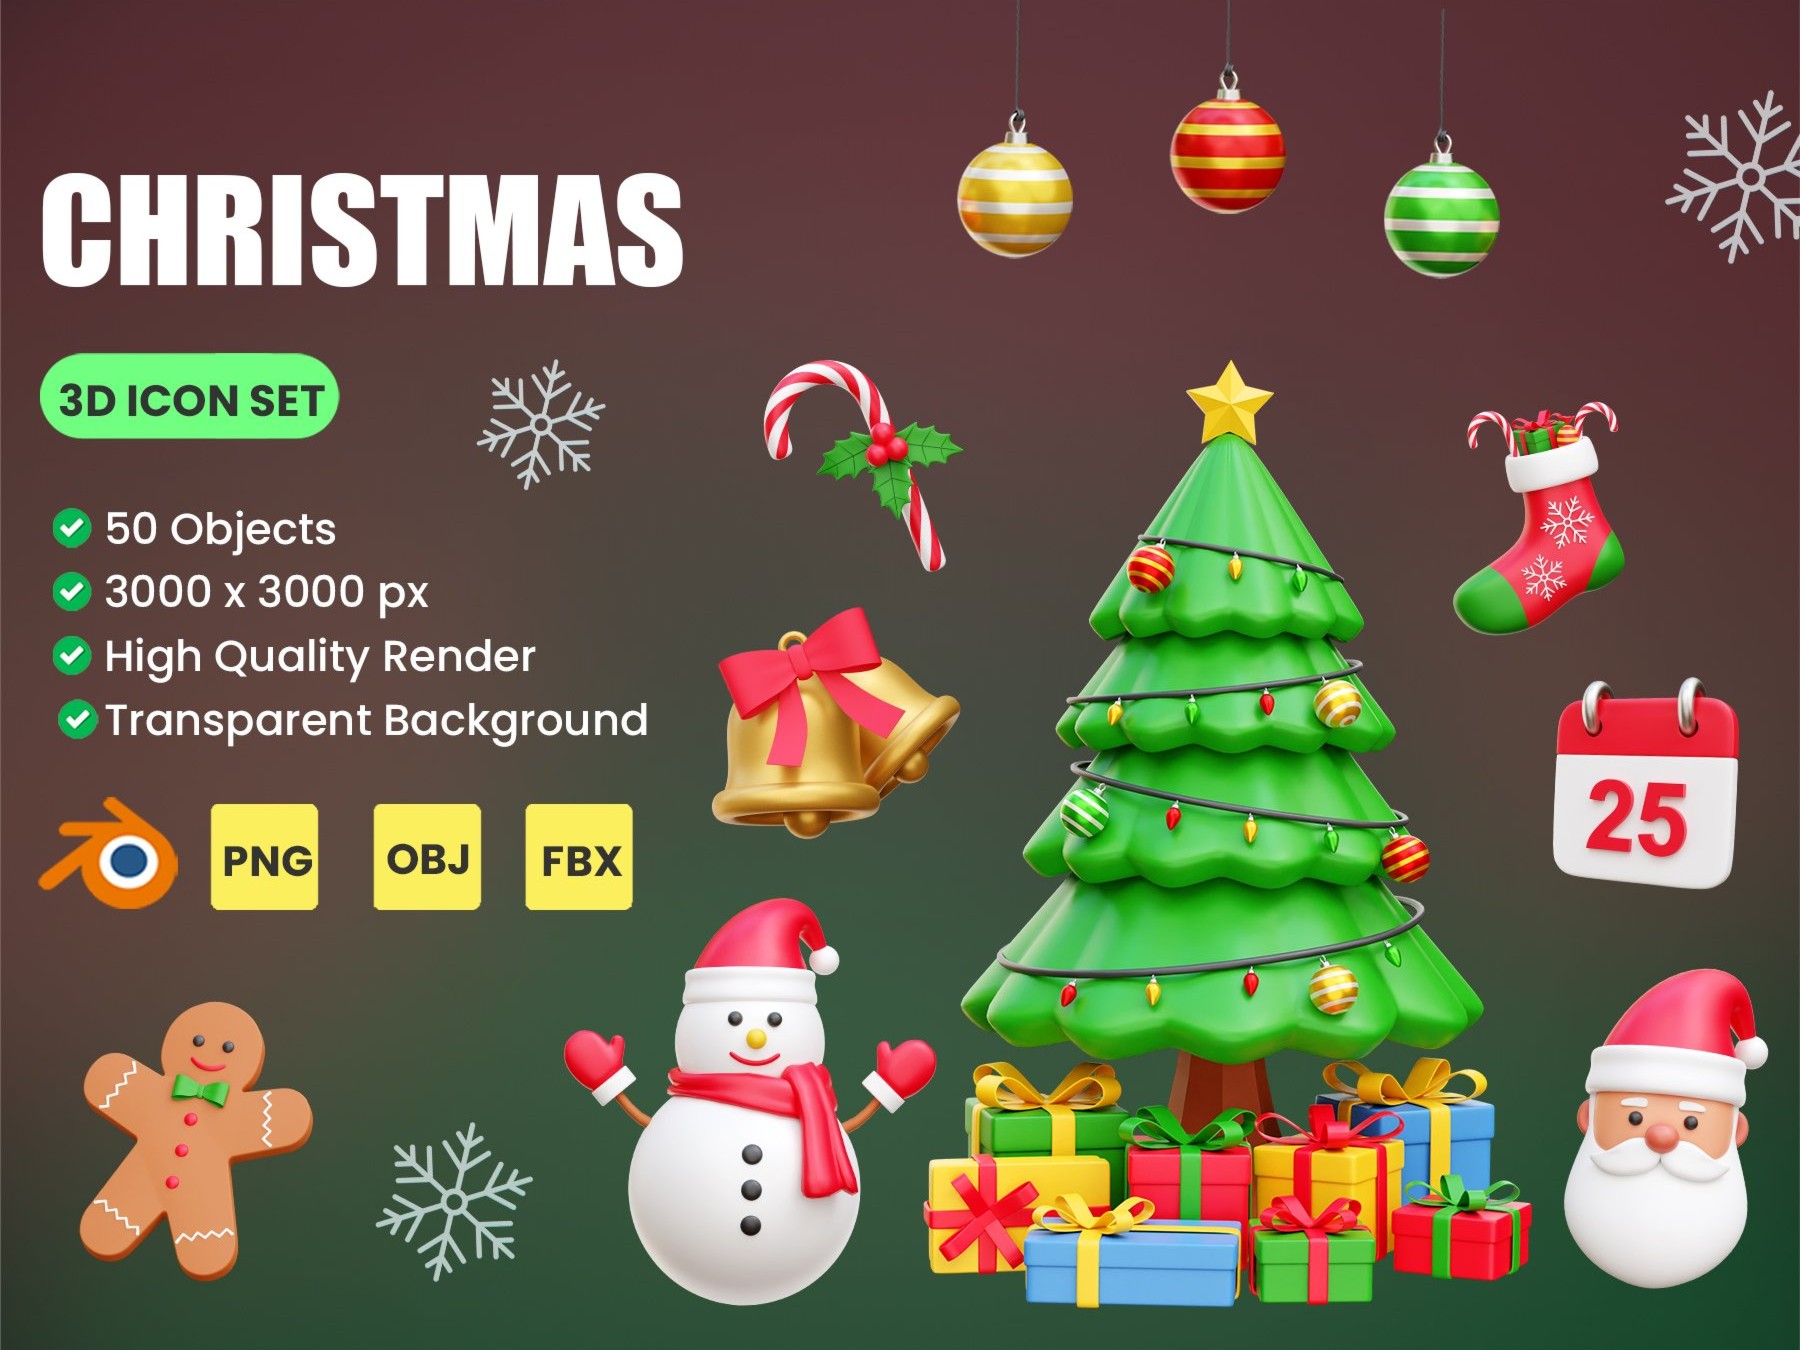 50个圣诞节3D icon图标 .png .blend .obj .fbx素材